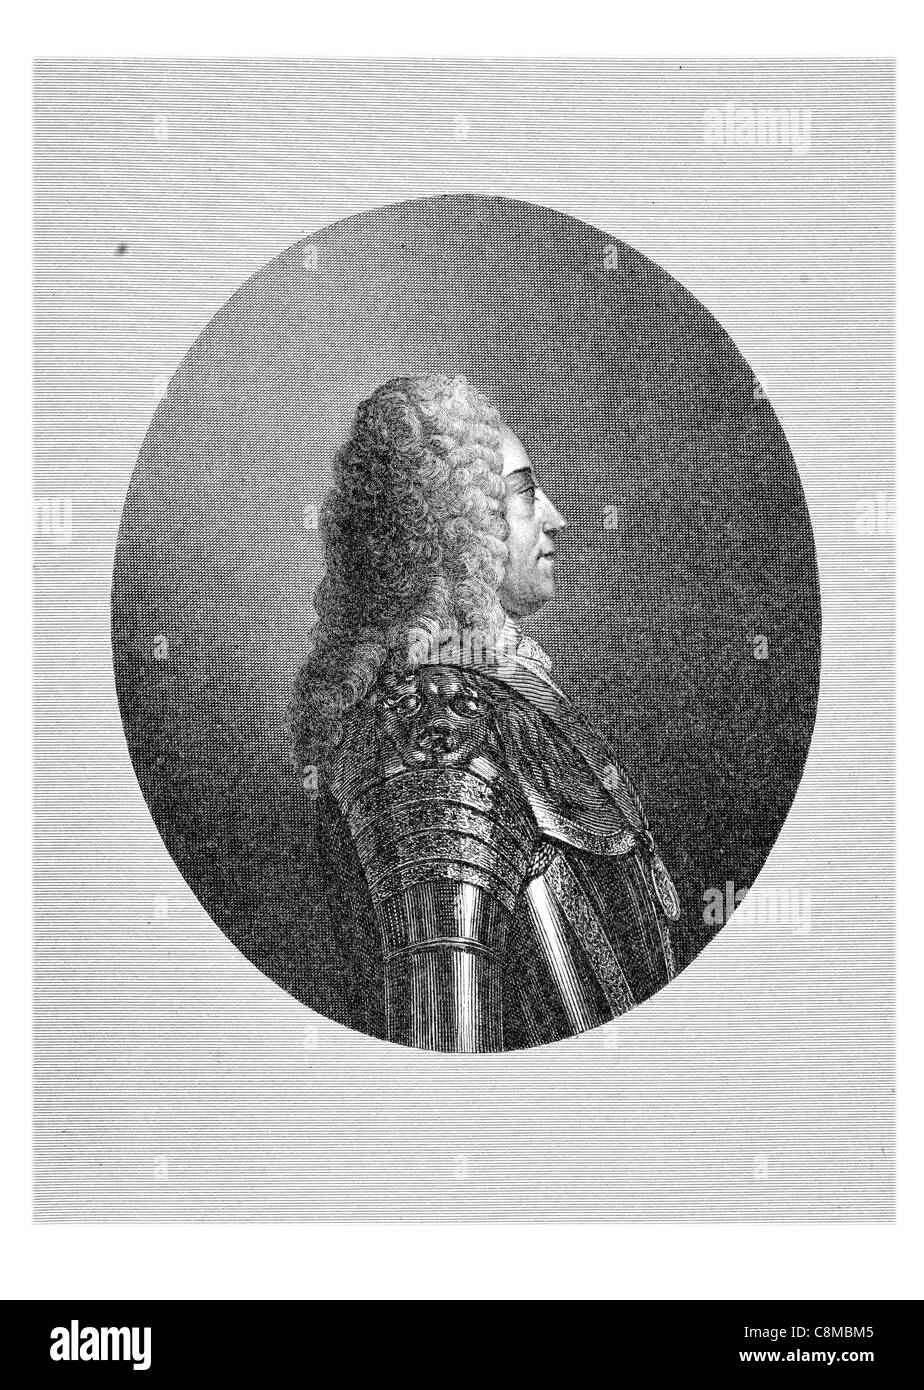 El rey Jorge II Augusto 2 2 1683 1760 Gran Bretaña Irlanda Duque de Brunswick el príncipe elector de Hannover de Lüneburg Archtreasurer Foto de stock